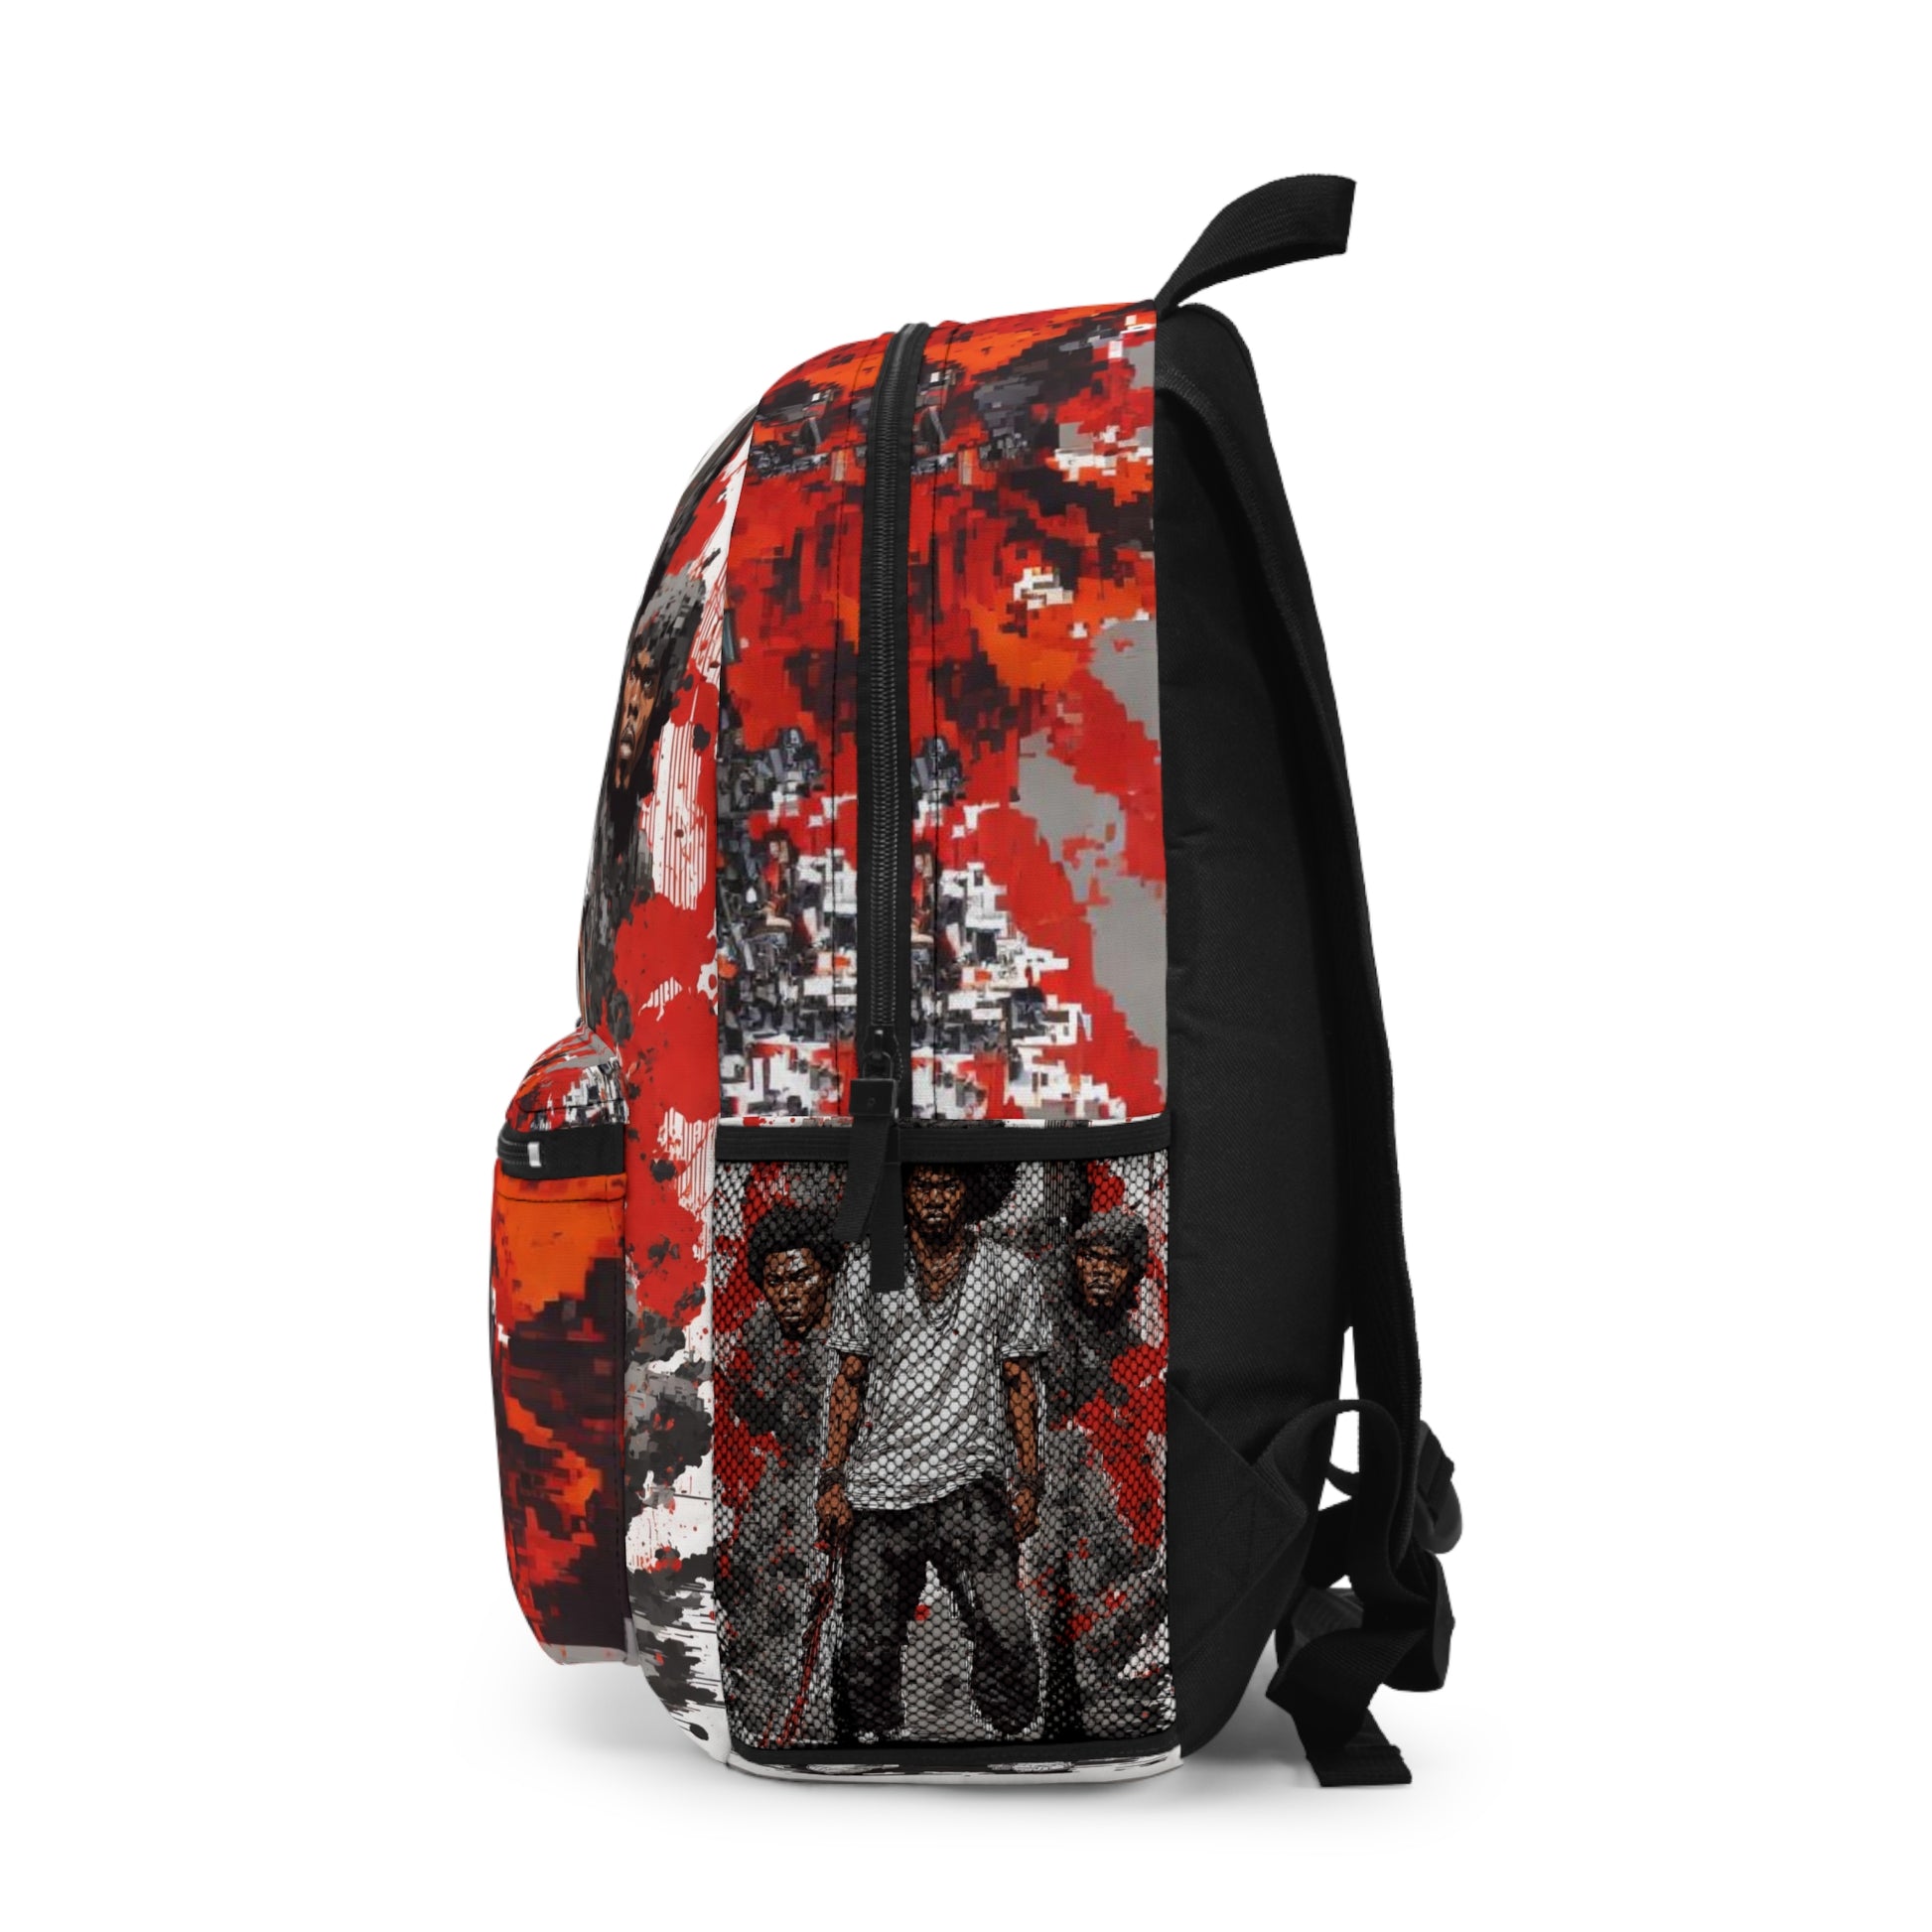 Afro Samurai Warrior: Durable Backpack, Stylish Bookbag